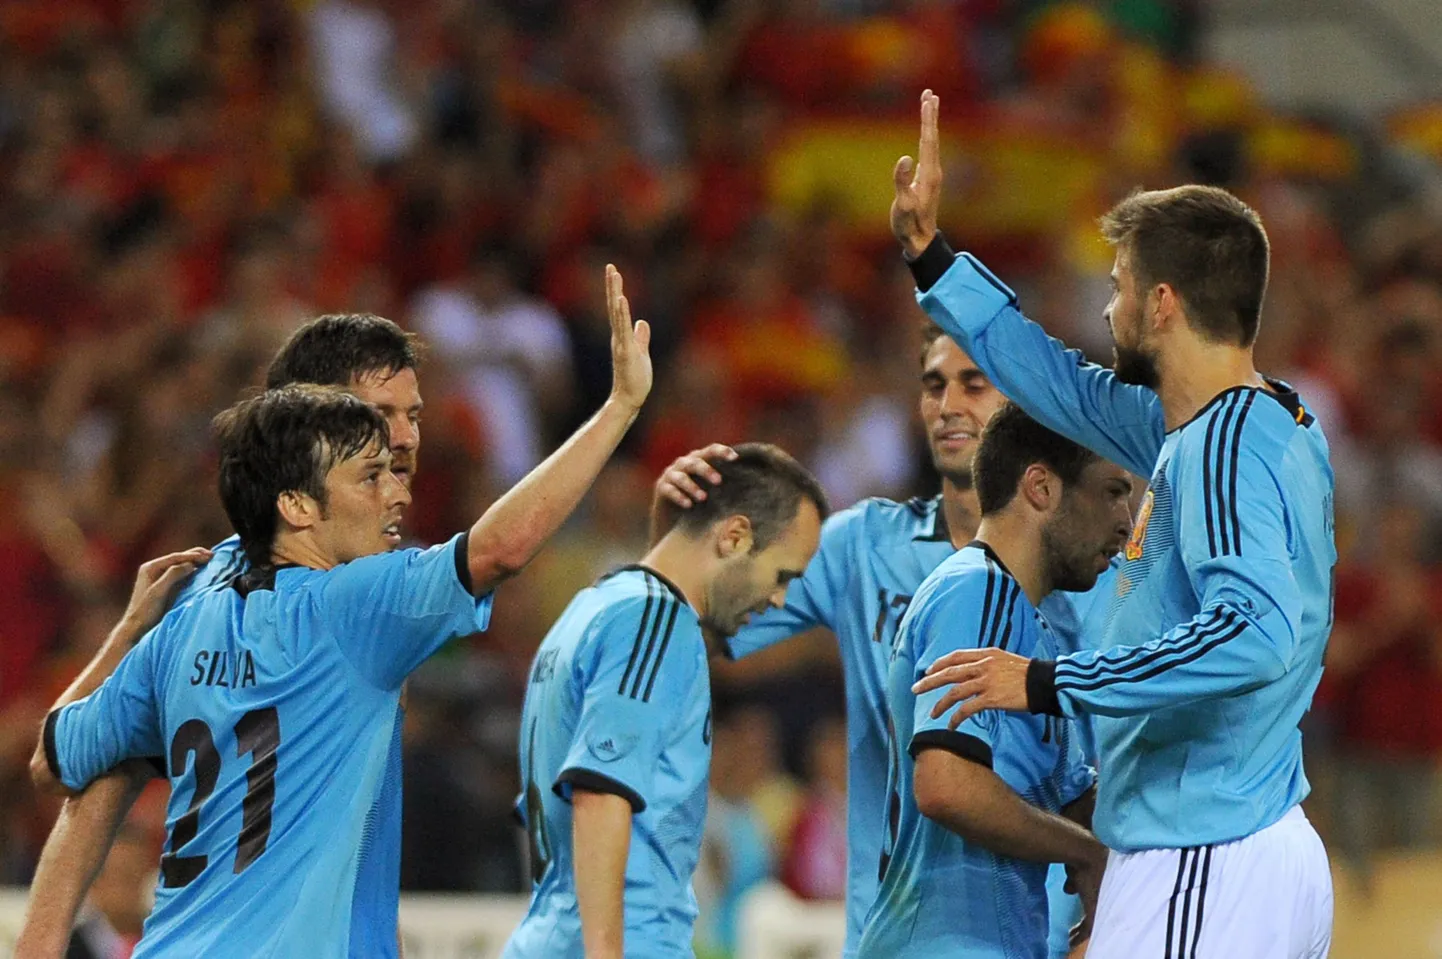 Hispaania jalgpallikoondise ründaja David Silva meeskonnakaaslastega väravat tähistamas.